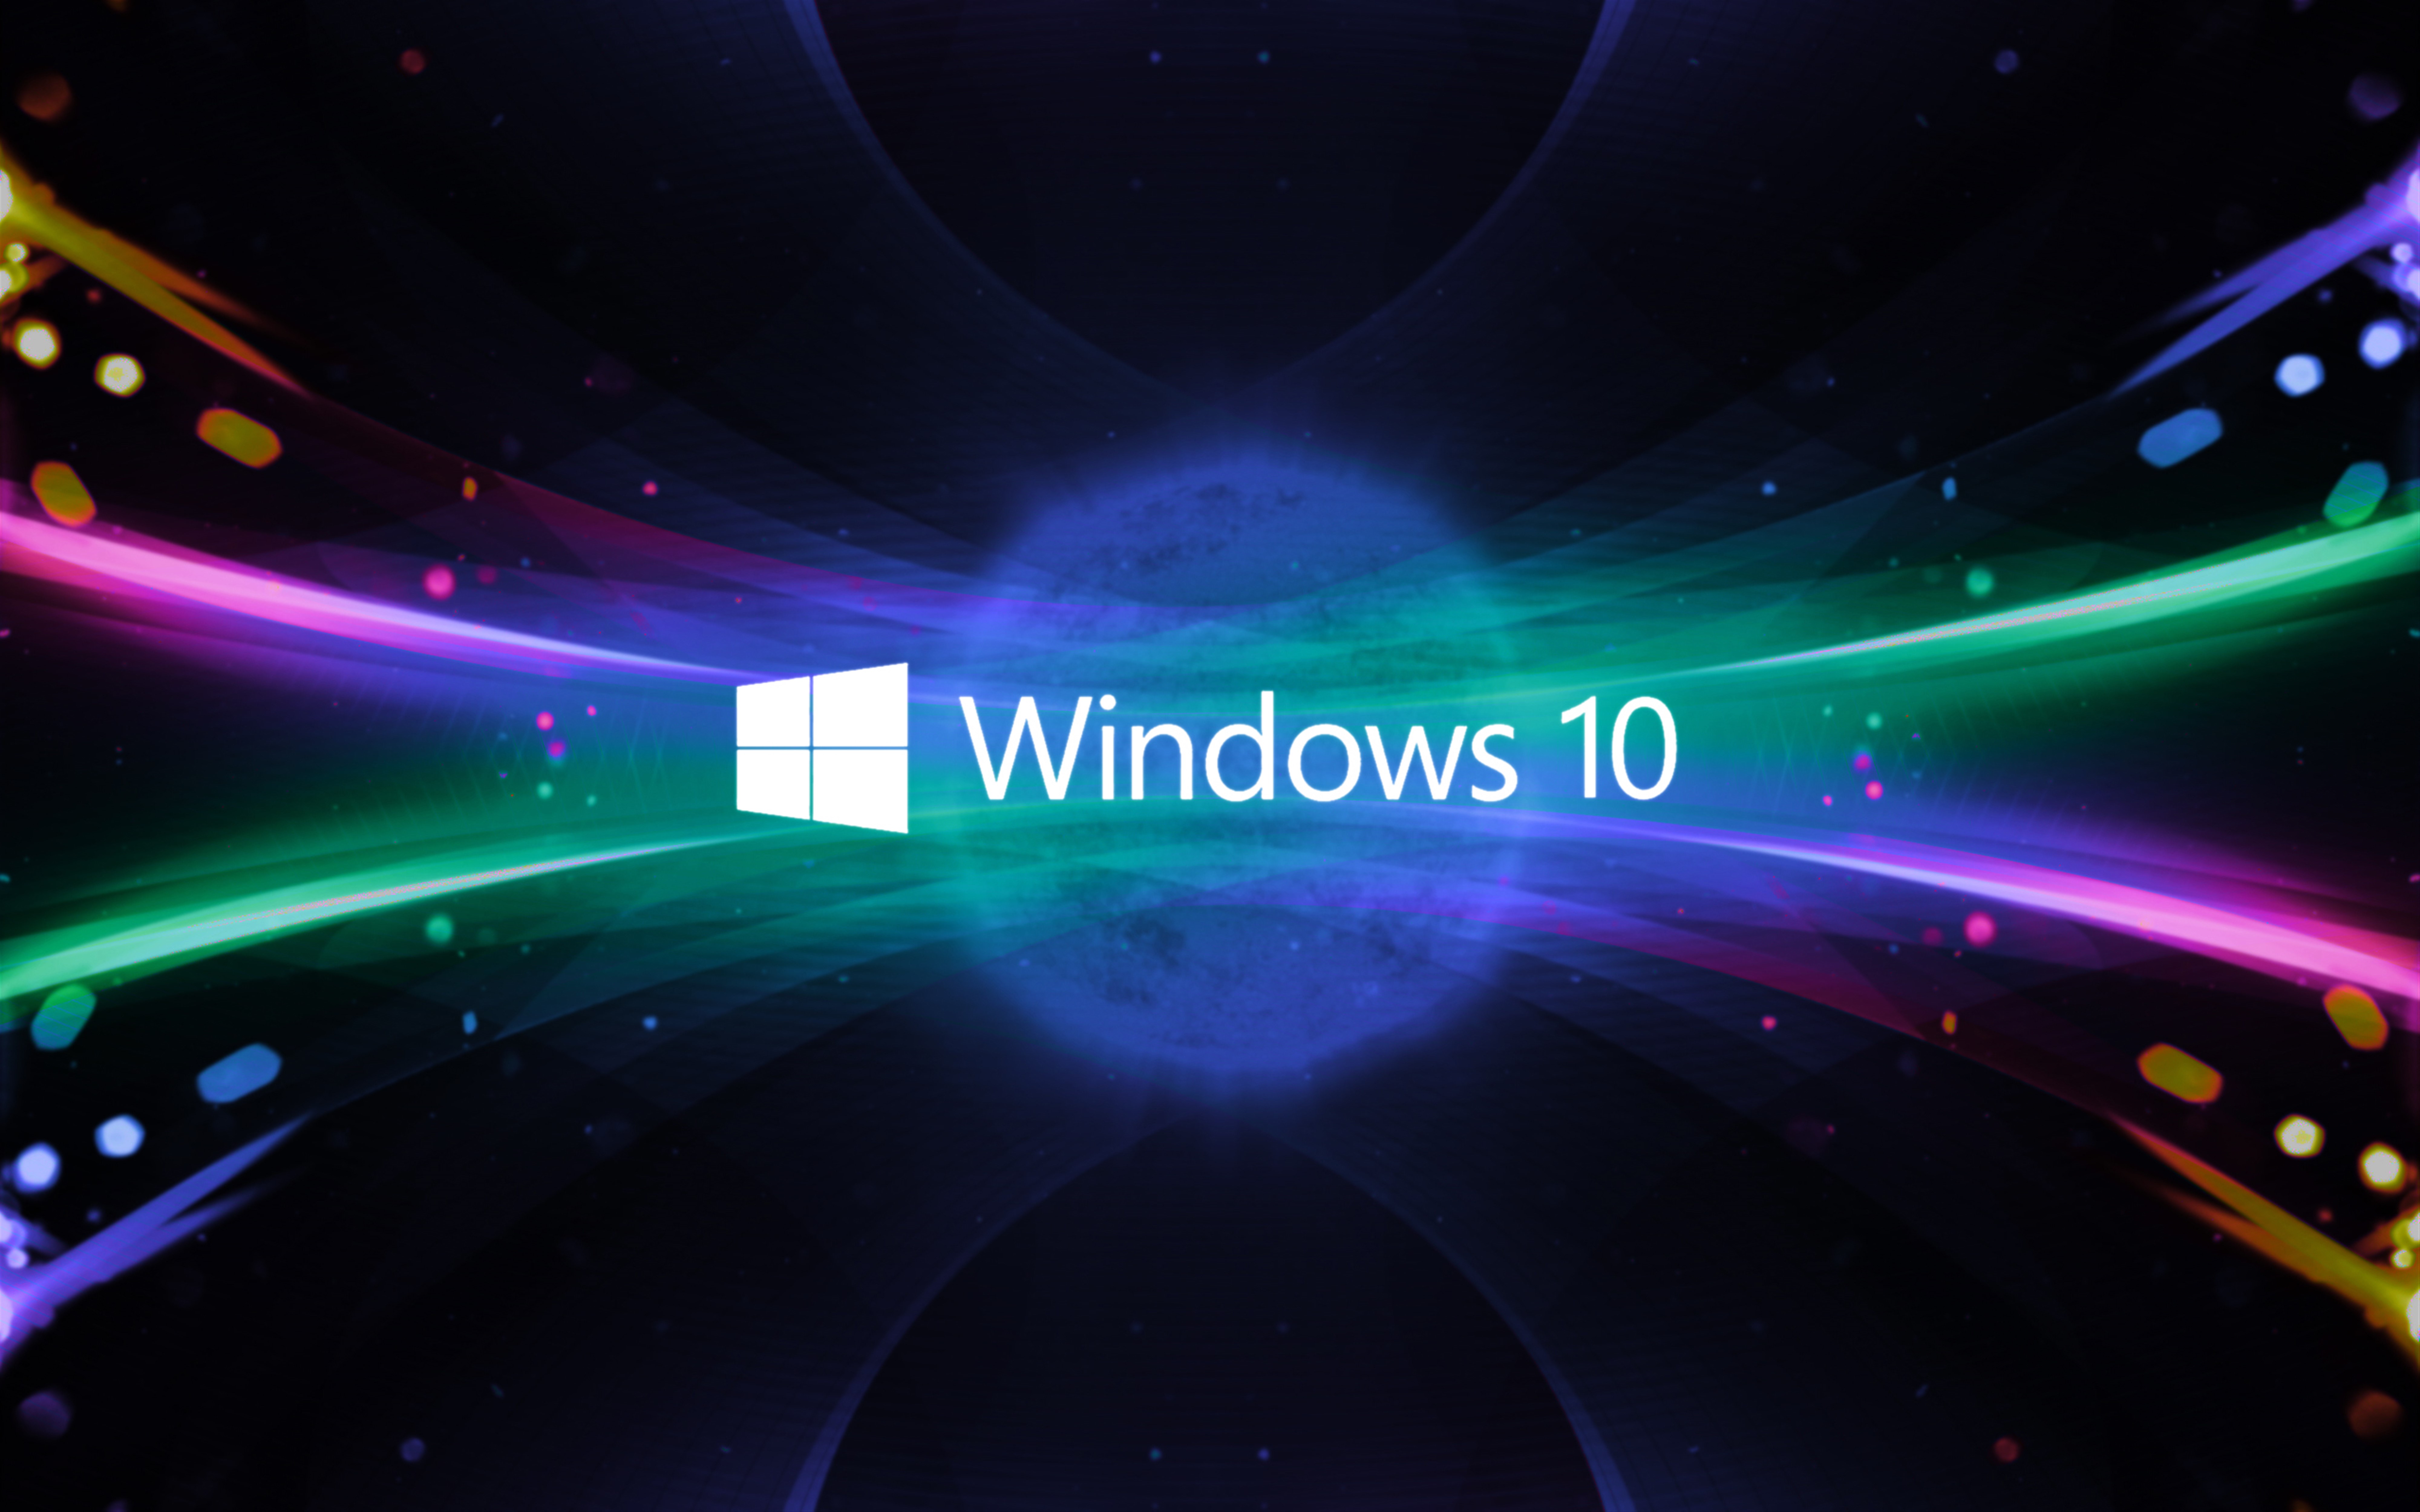 Chủ đề Windows 10 HD mang đến trải nghiệm tuyệt vời cho người dùng máy tính. Hãy khám phá các hình nền HD về chủ đề Windows 10 để tìm thấy phong cách ưa thích của bạn.